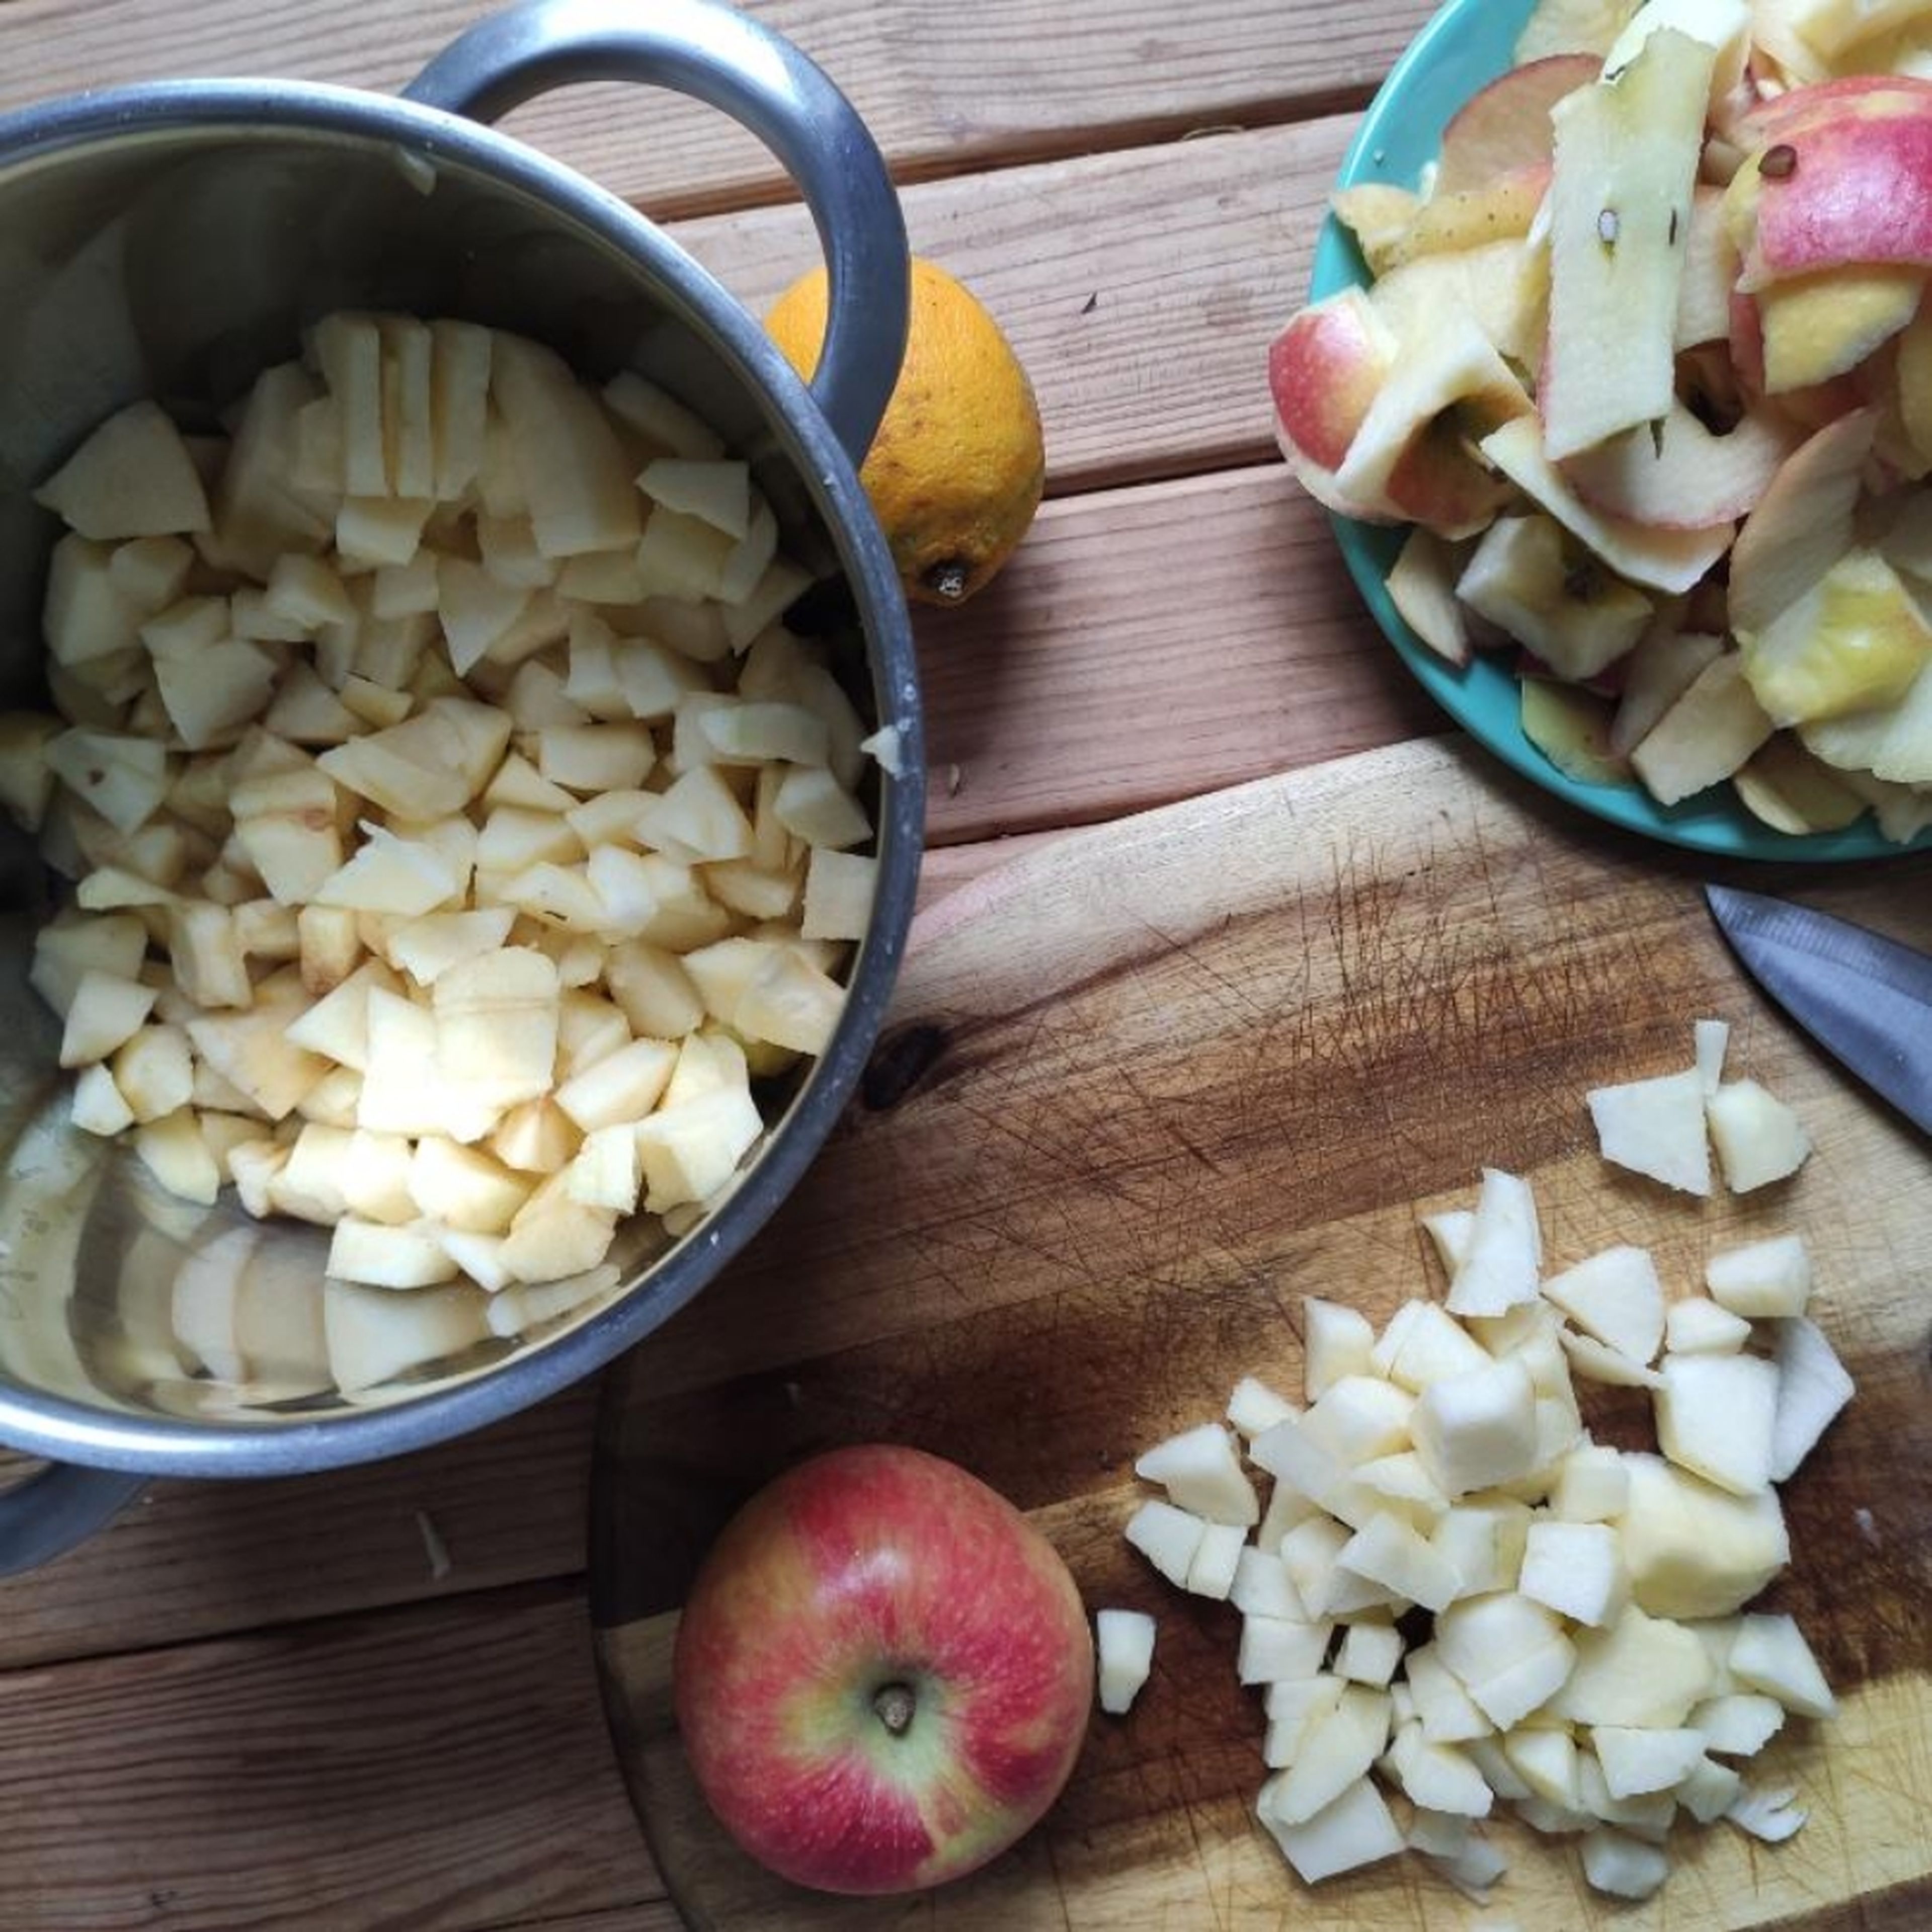 Die Äpfel in Stückchen schneiden, den Saft der Zitrone und circa 100-200ml Wasser hinzufügen. Etwa 20-30min auf dem Herd einkochen lassen, nach belieben vor dem Einkochen Zucker und/oder 1 Zimtstange hinzufügen.